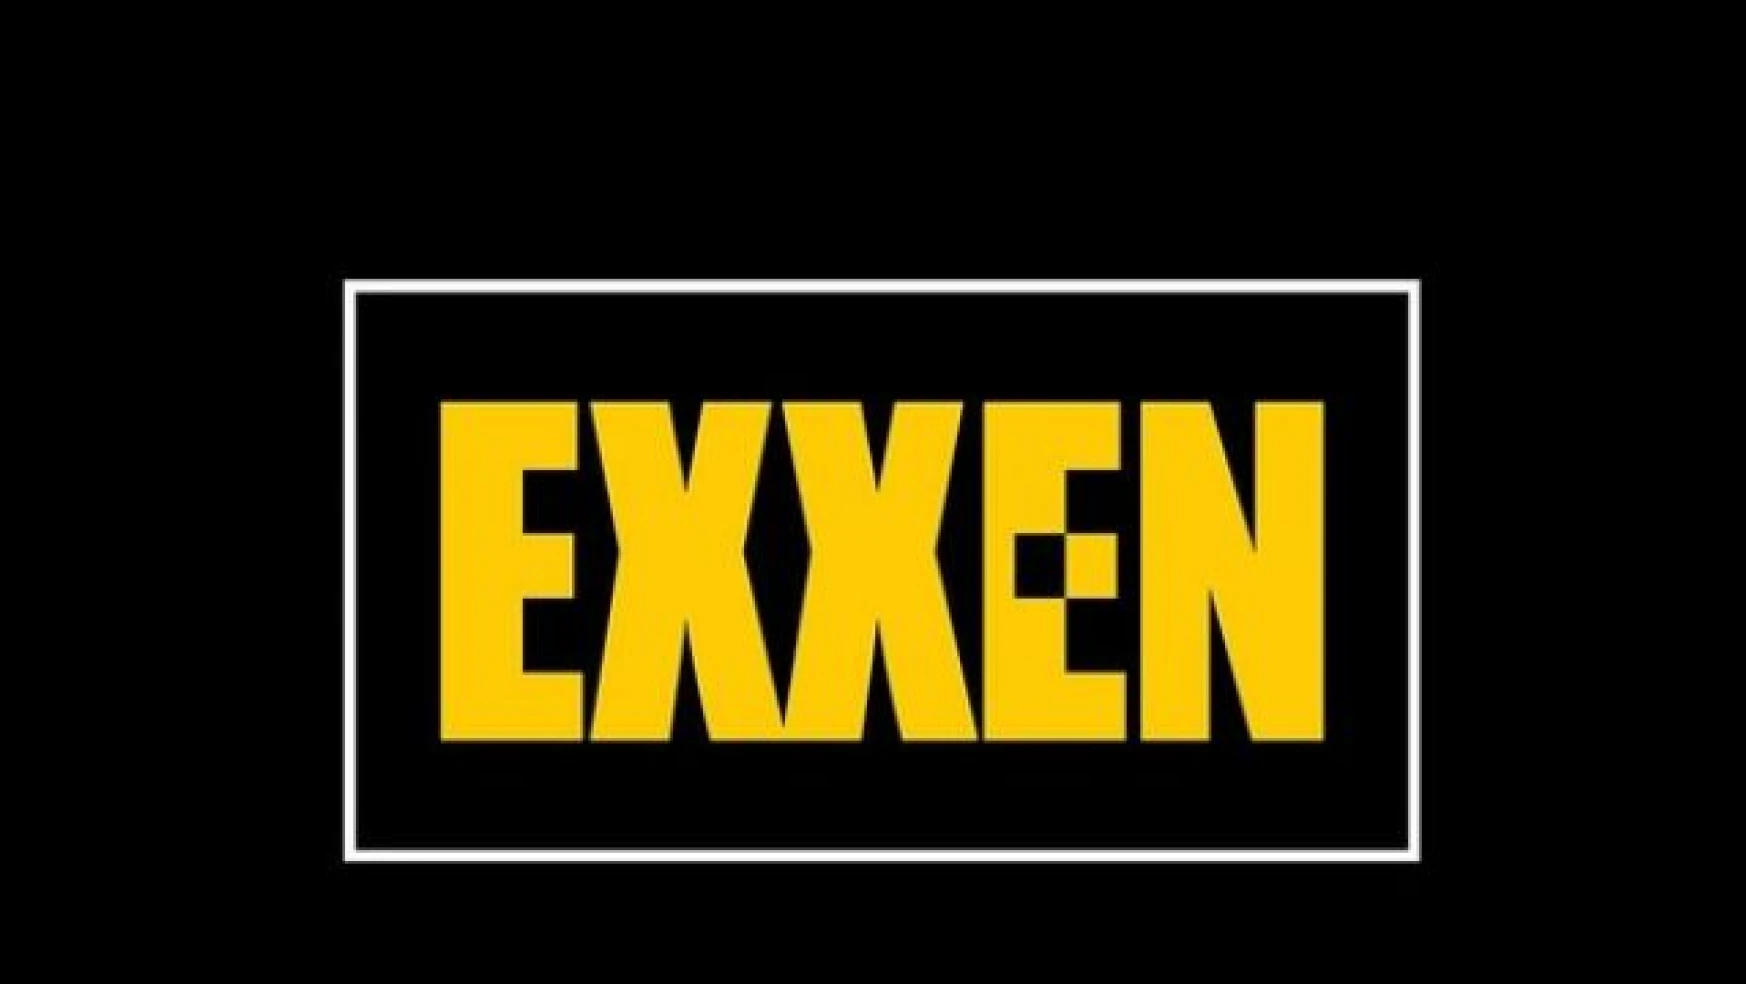 Exxen abonelik fiyatı ne kadar? UEFA Avrupa Ligi maçları Exxen üyelik fiyatı ne kadar, kaç TL?